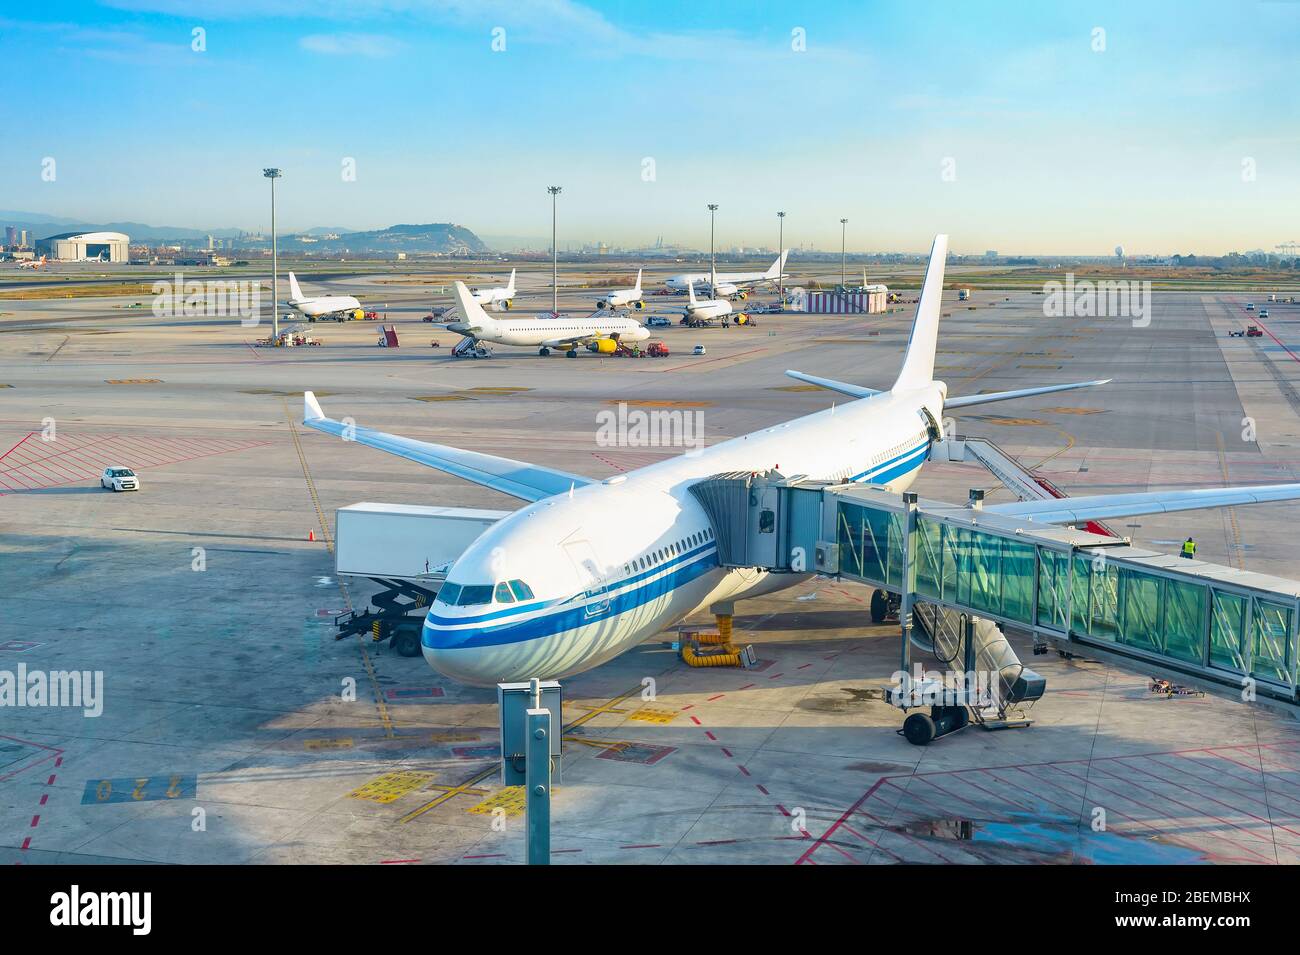 Pasarela telescópica de vidrio por avión, pista de aterrizaje del aeropuerto, aviones en el fondo en el aeródromo, Oporto, Portugal Foto de stock